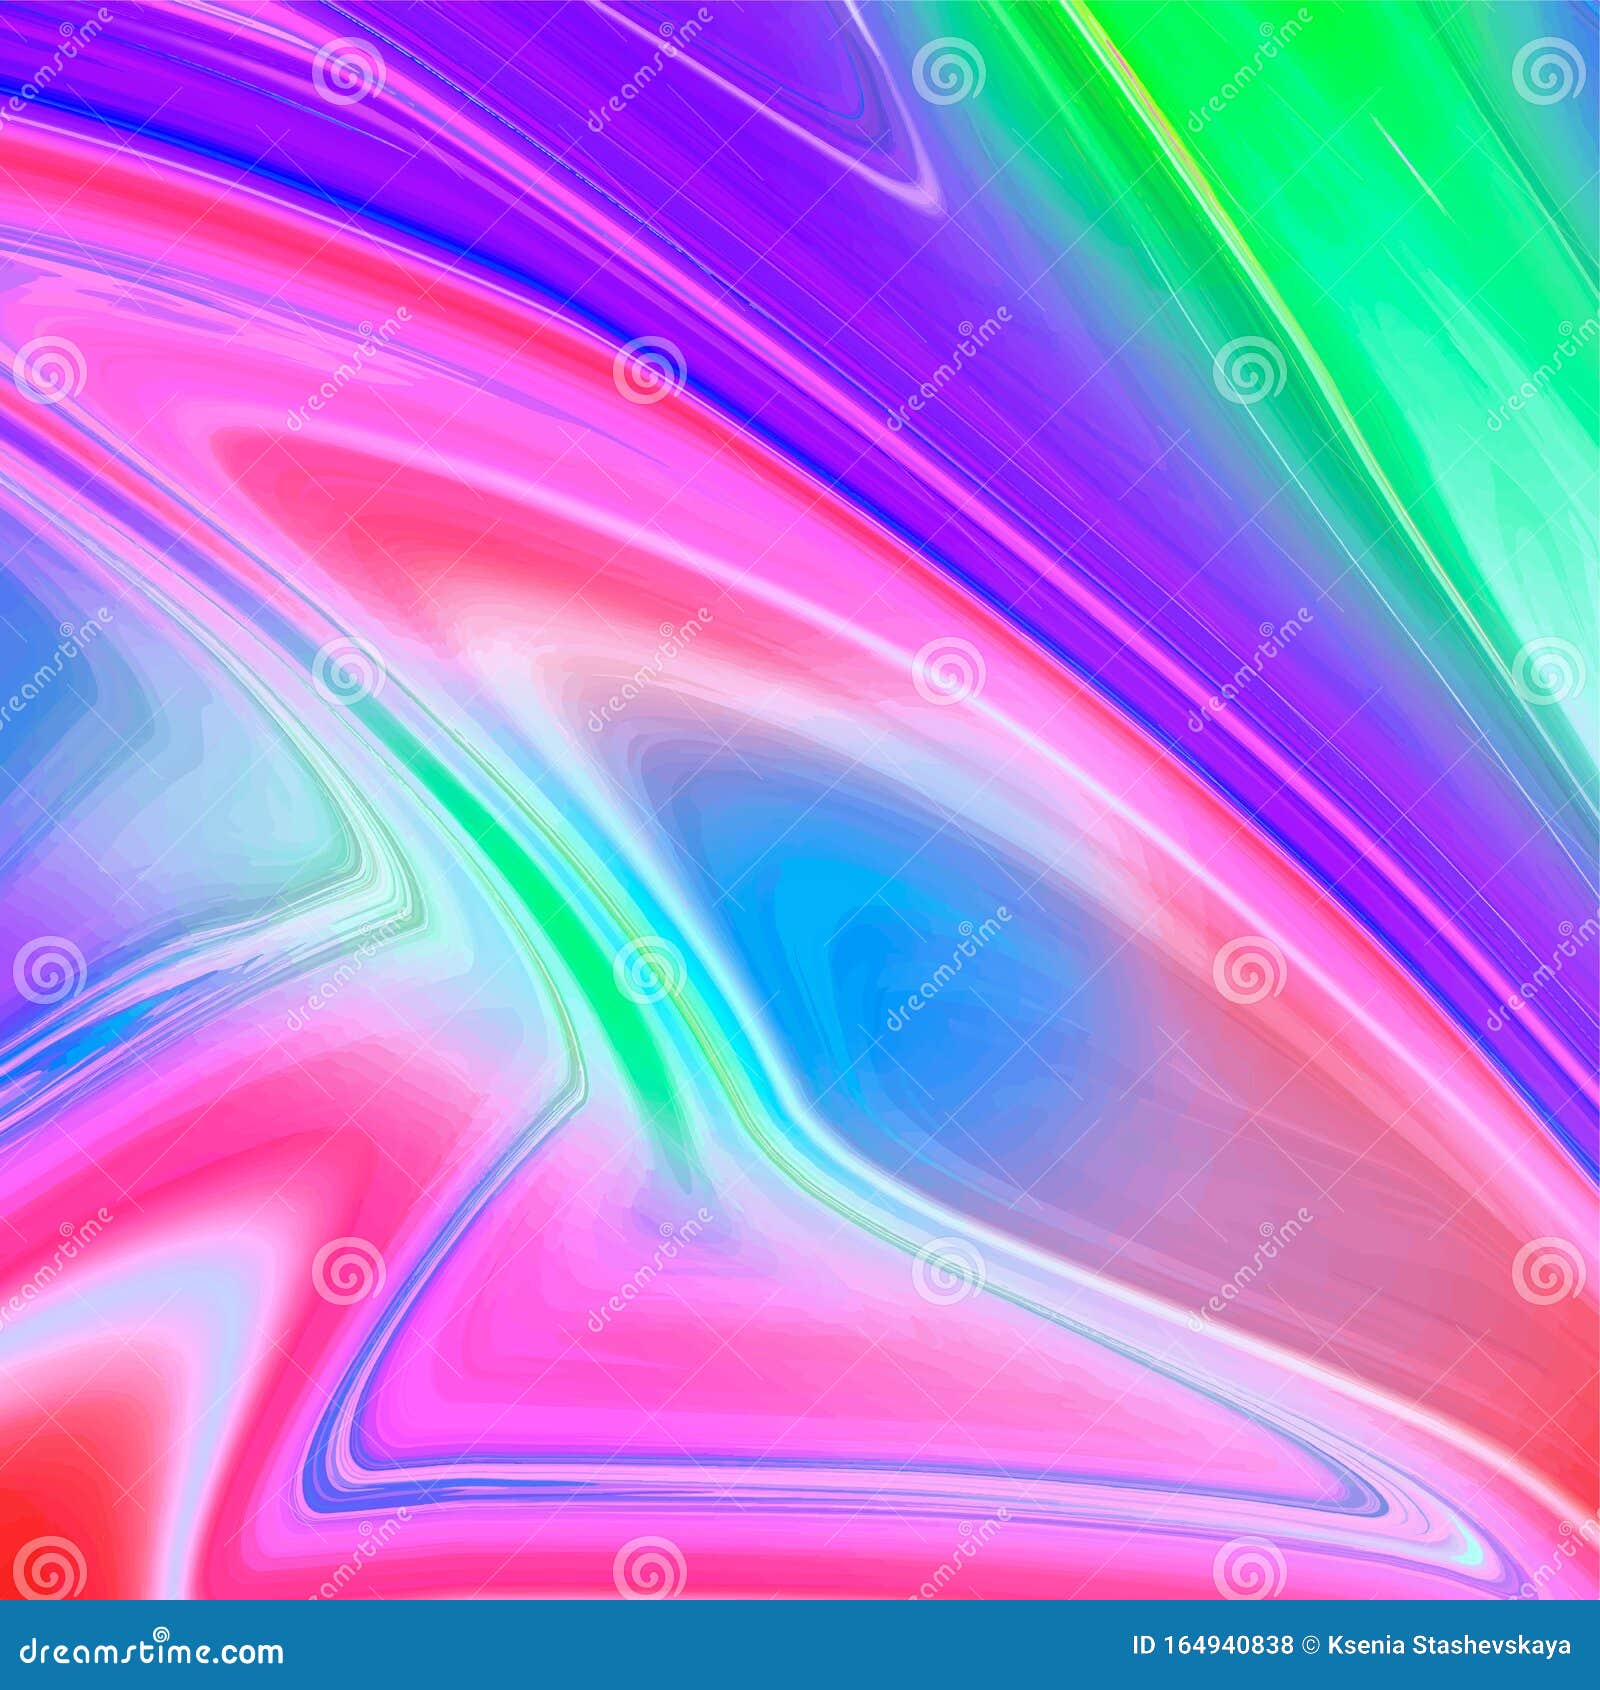 Pastel Neon Galaxy Background